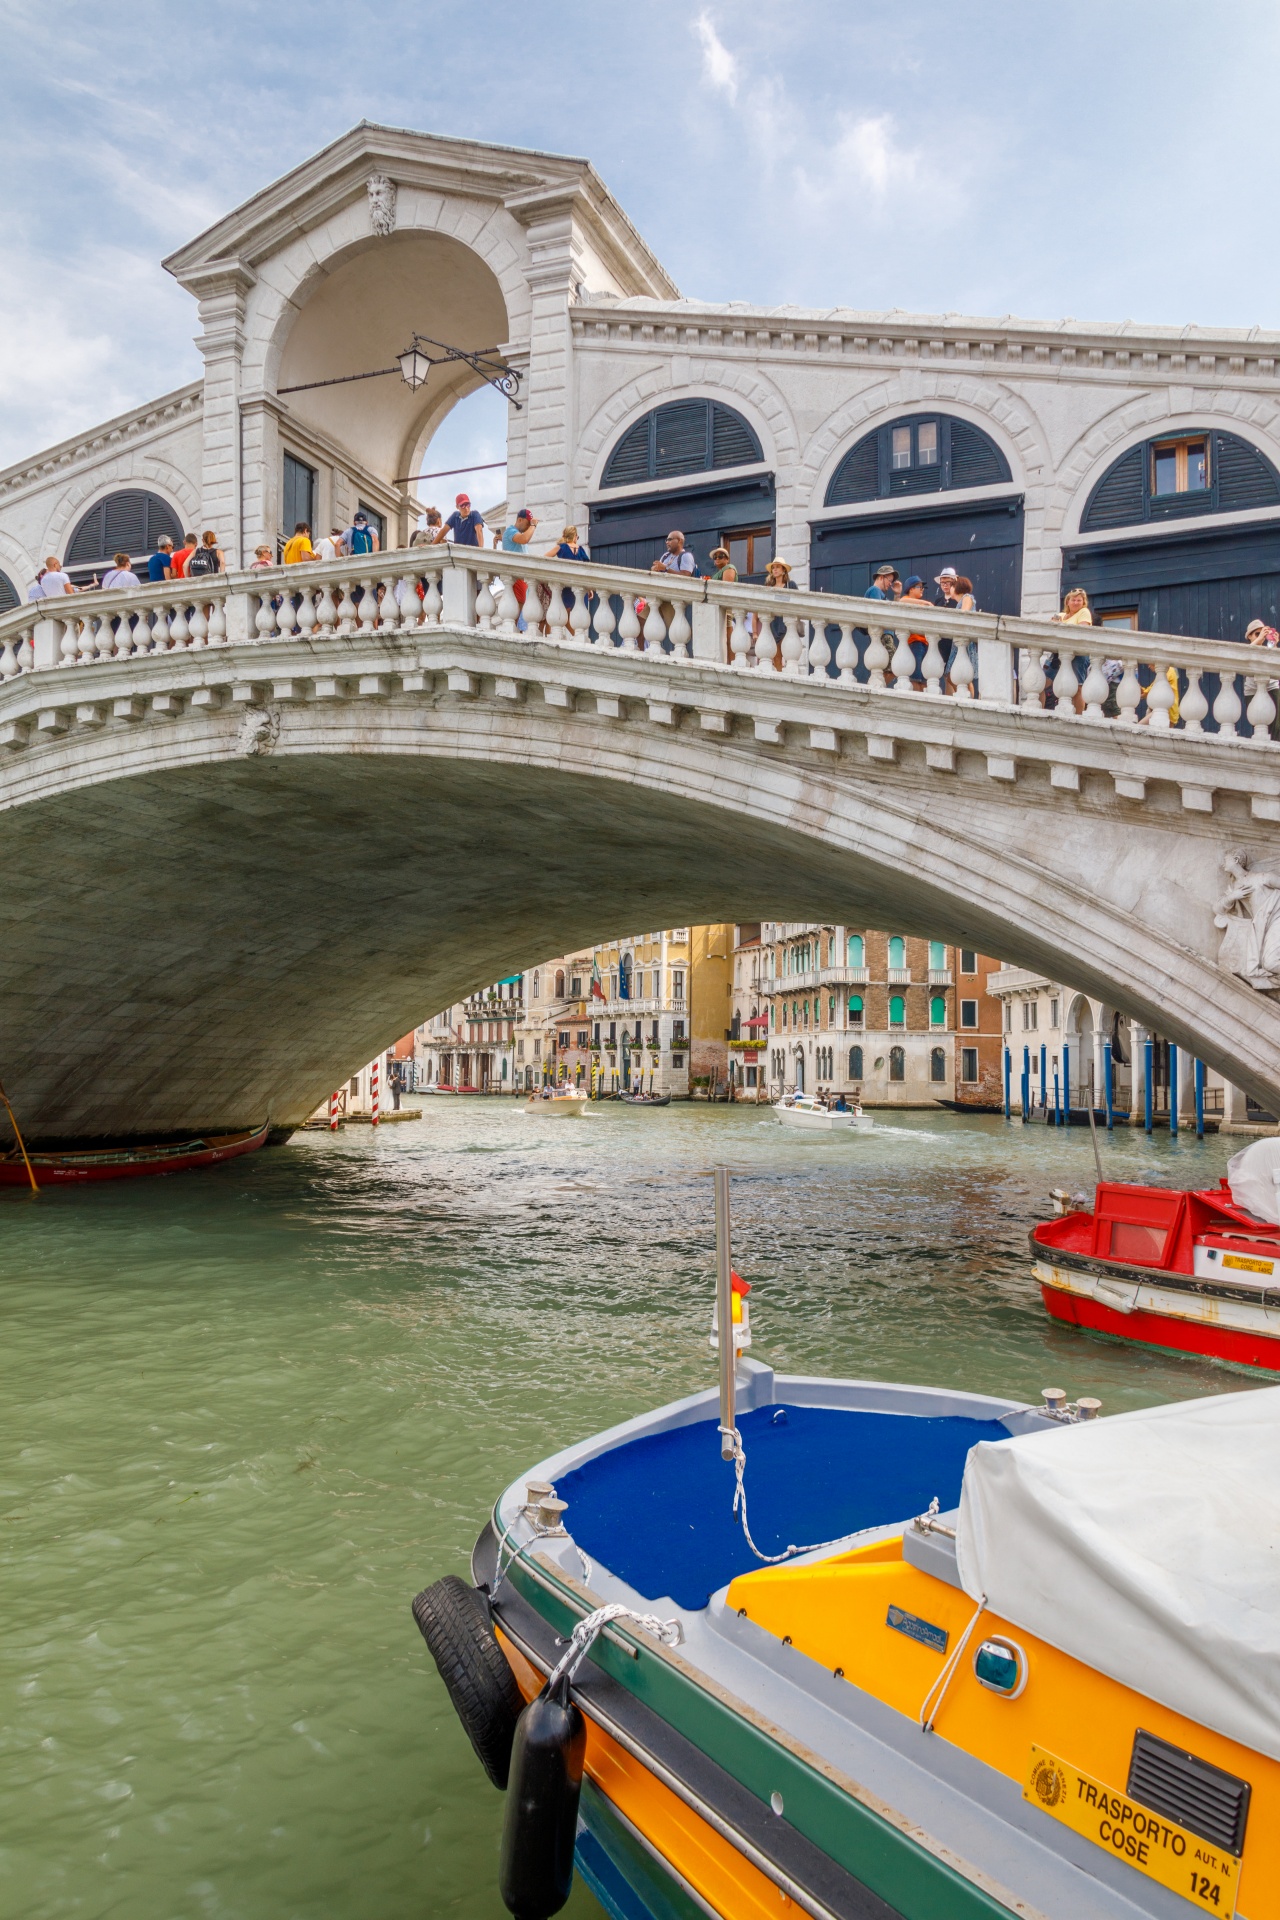 Rialto Bridge In Venice